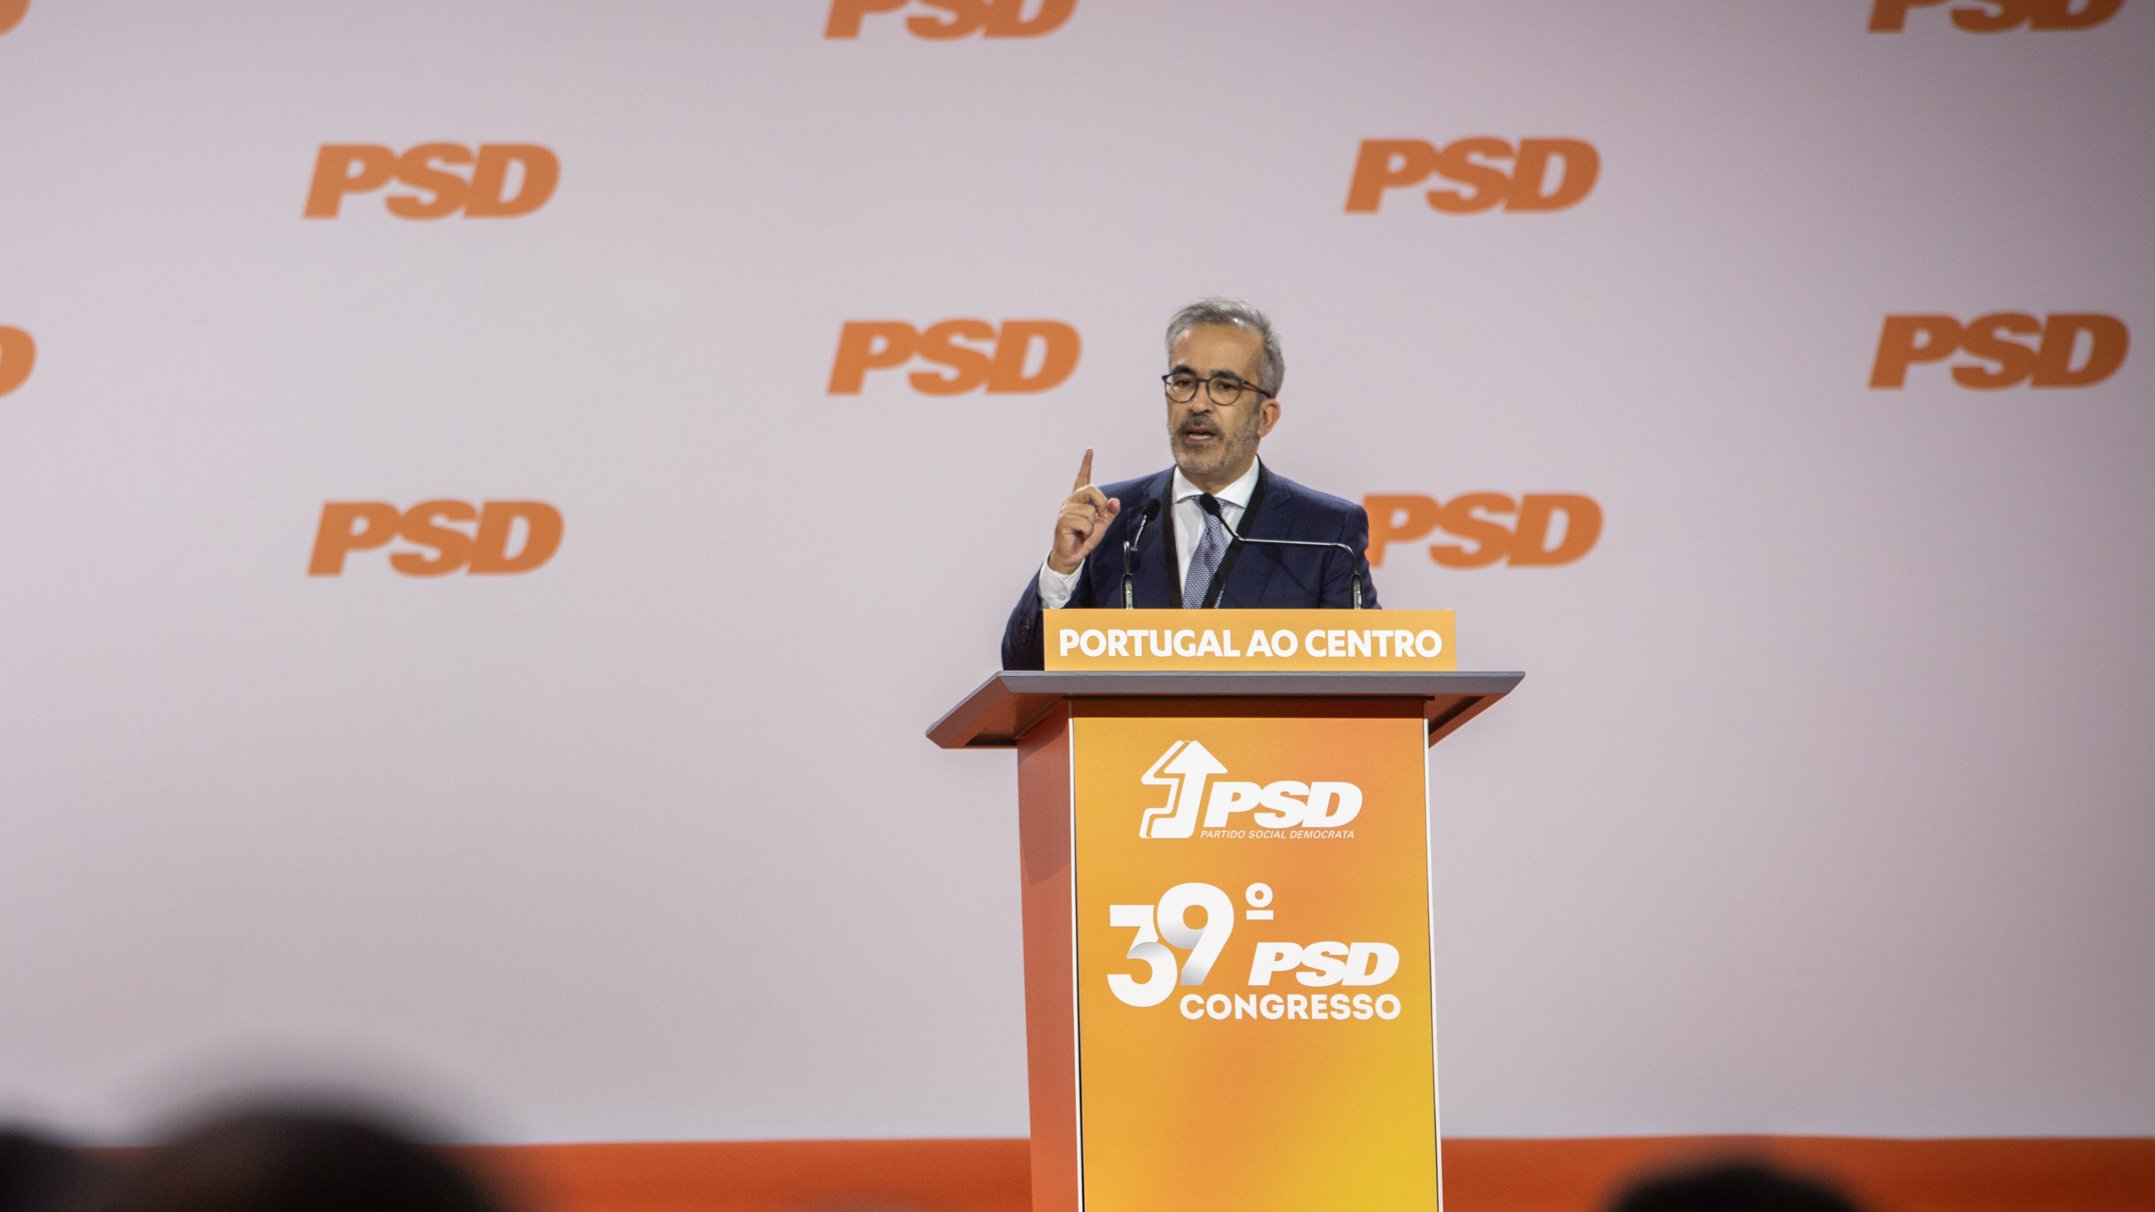 39º Congresso PSD (Partido Social Democrata) - intervenção de Paulo Rangel, no segundo dia de congresso. Santa Maria da Feira, Aveiro 18 de Dezembro de 2021 TOMÁS SILVA/OBSERVADOR